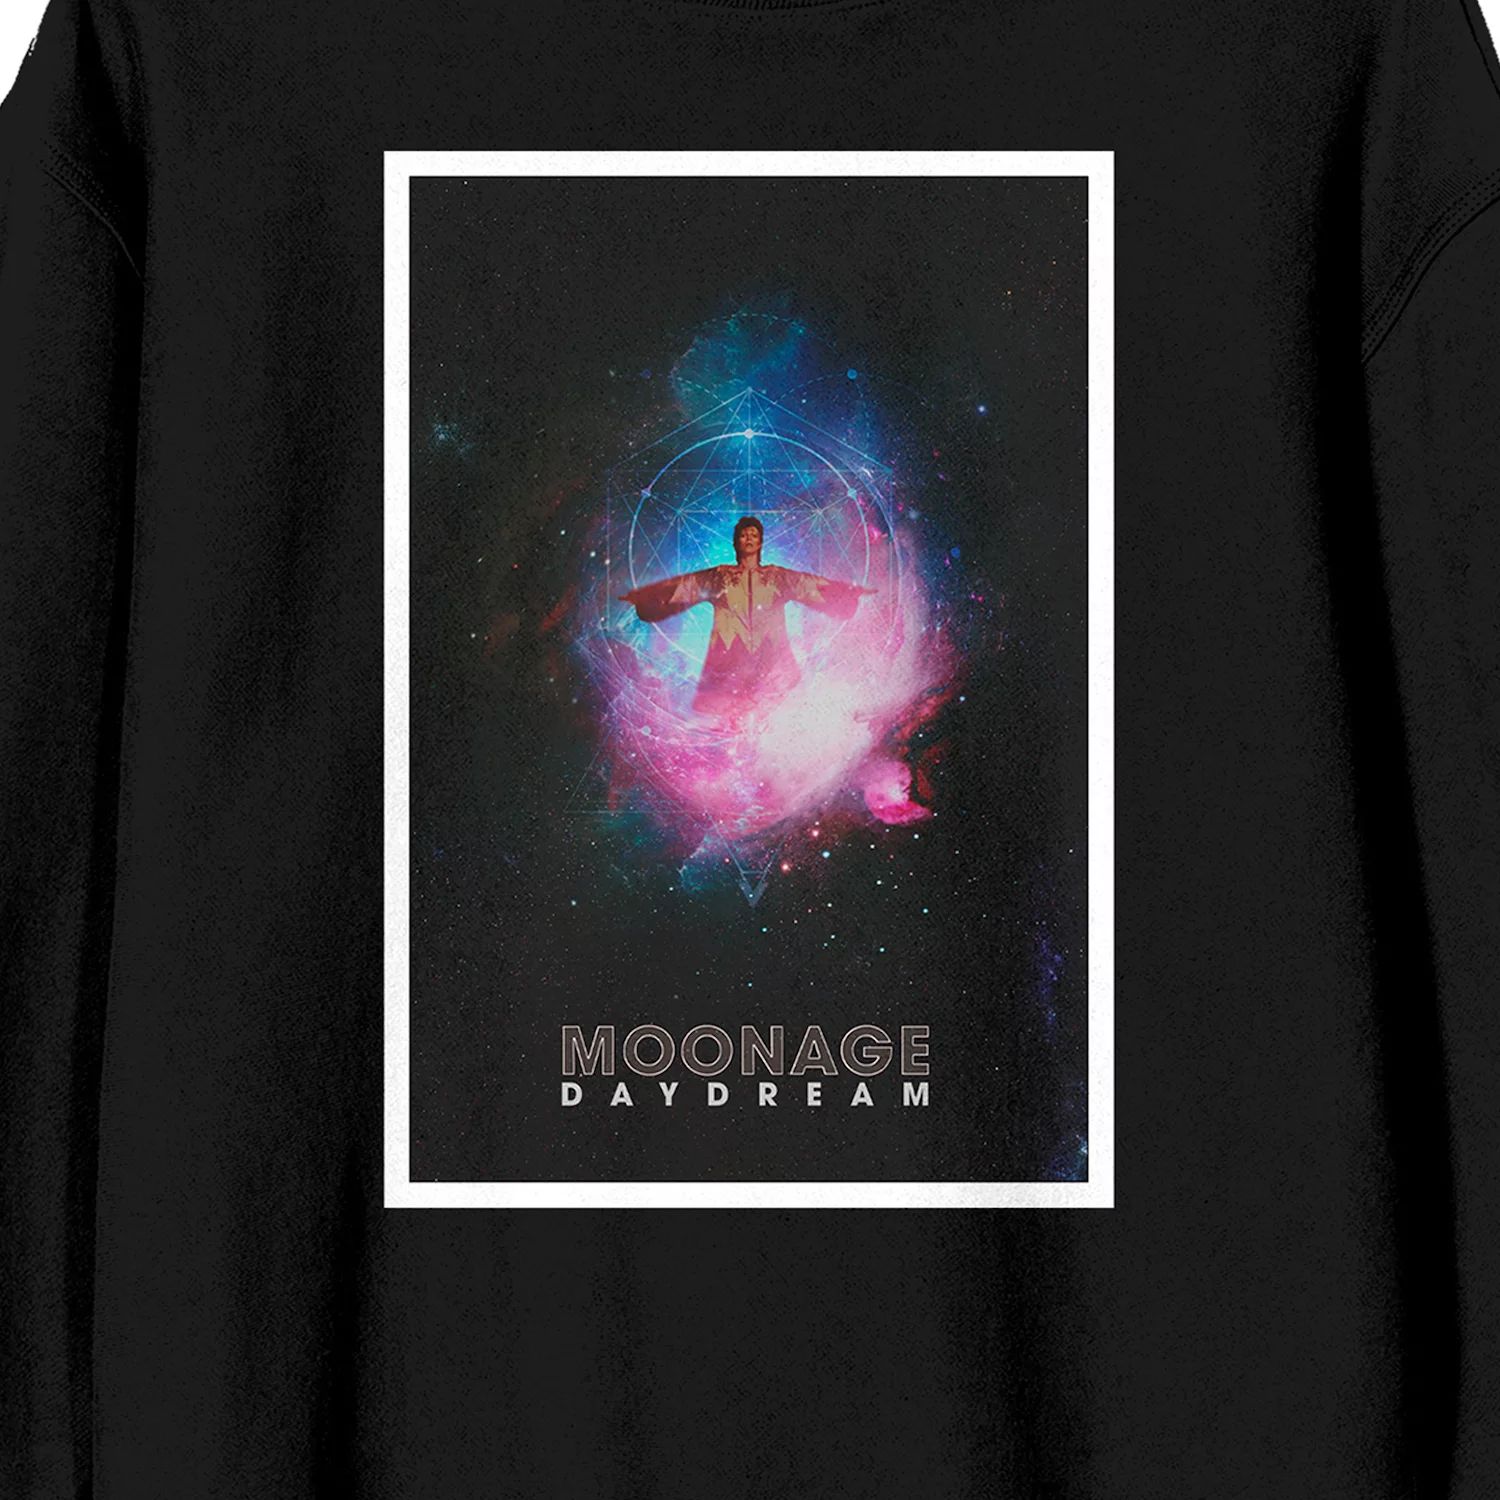 Мужской пуловер с длинными рукавами и рисунком David Bowie Moonage Daydream Licensed Character